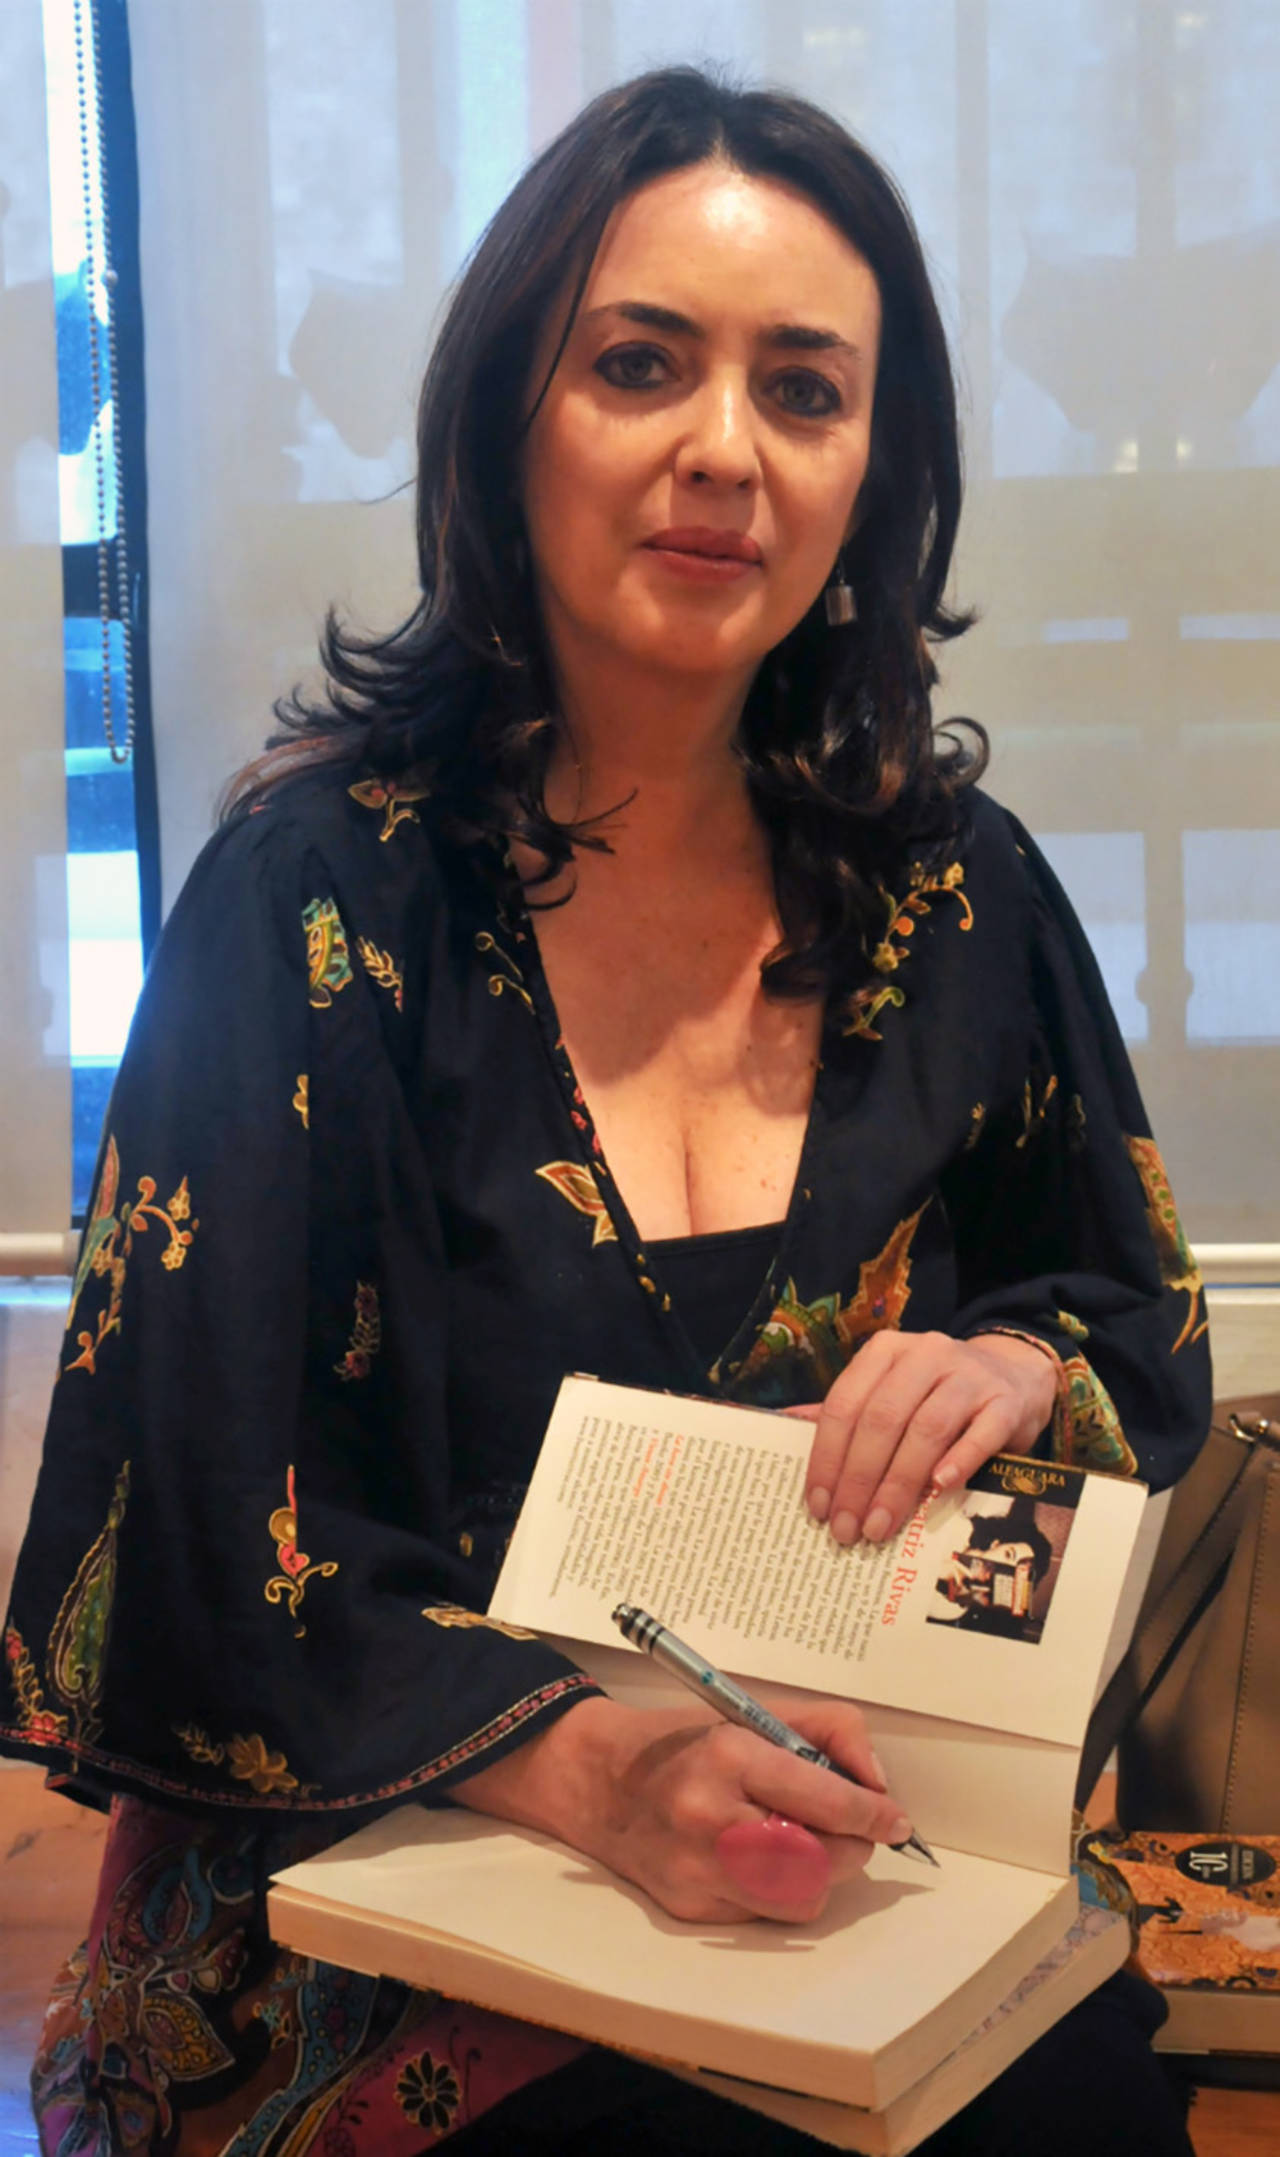 Maestra. La escritora mexicana Beatriz Rivas, reconocida como formadora de escritores, aborda la masacre de los chinos en Torreón, en su más reciente novela publicada bajo el sello de Alfaguara.